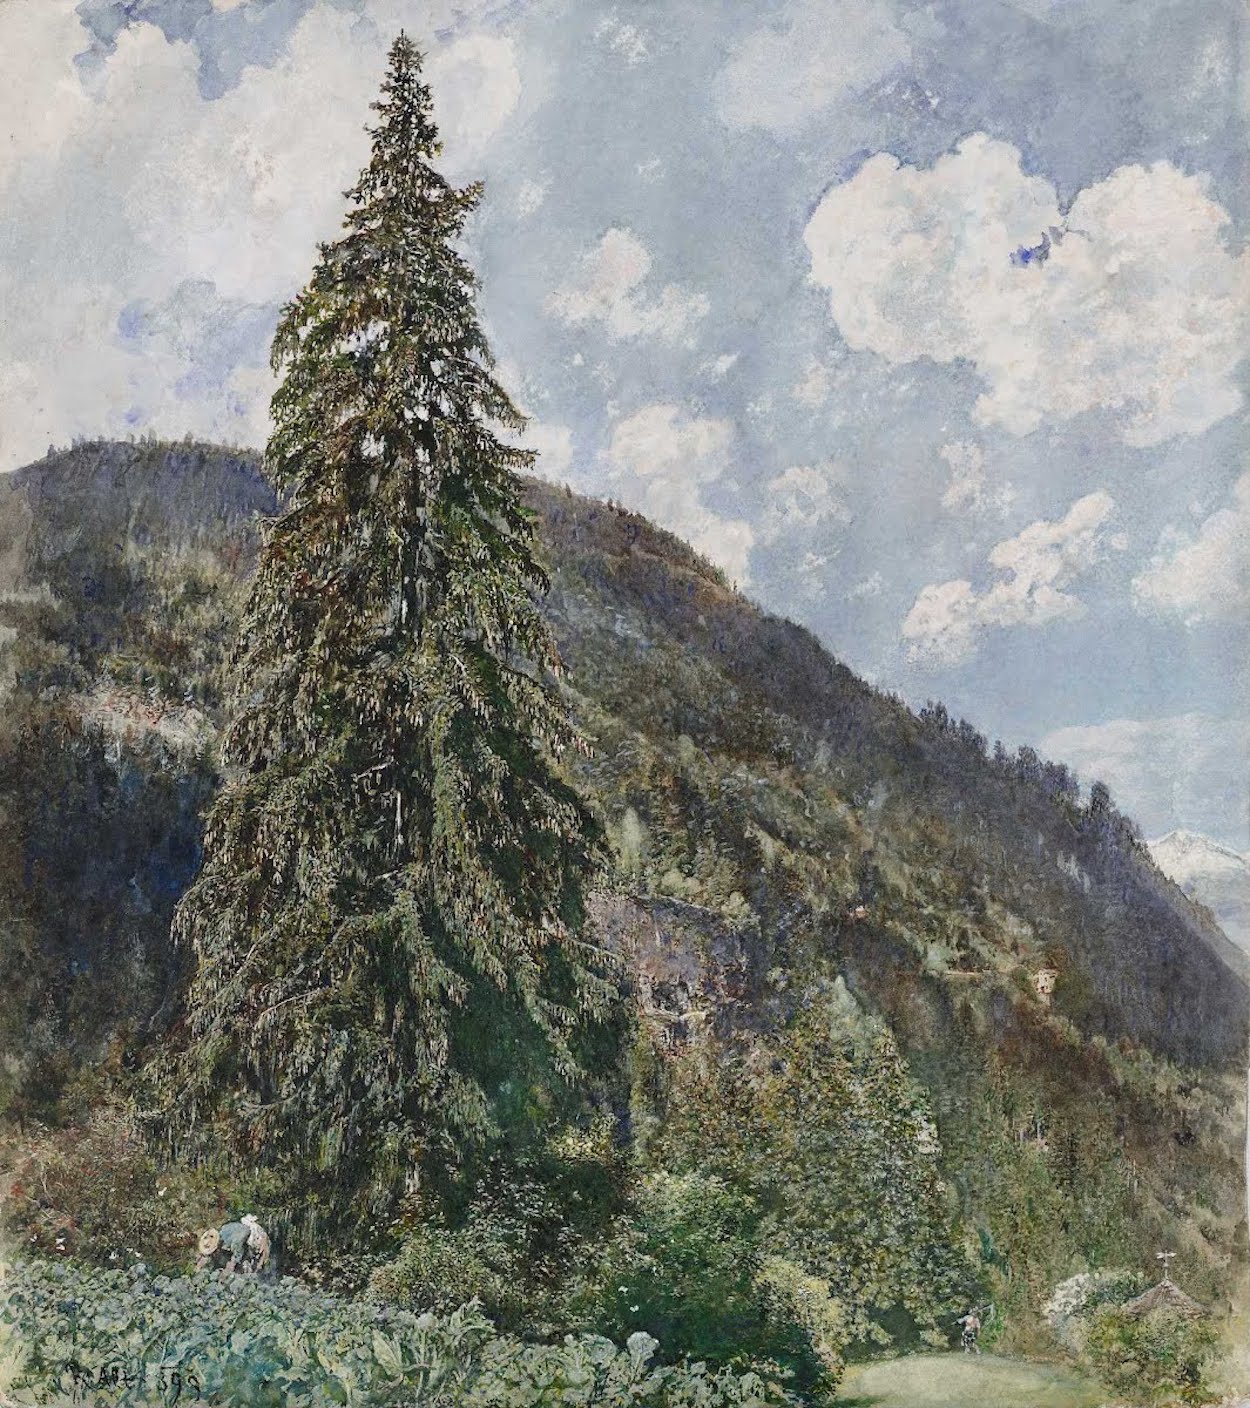 The Old Spruce in Bad Gastein by Rudolf von Alt - 1899 - 50.4 x 56.8 cm Leopold Museum